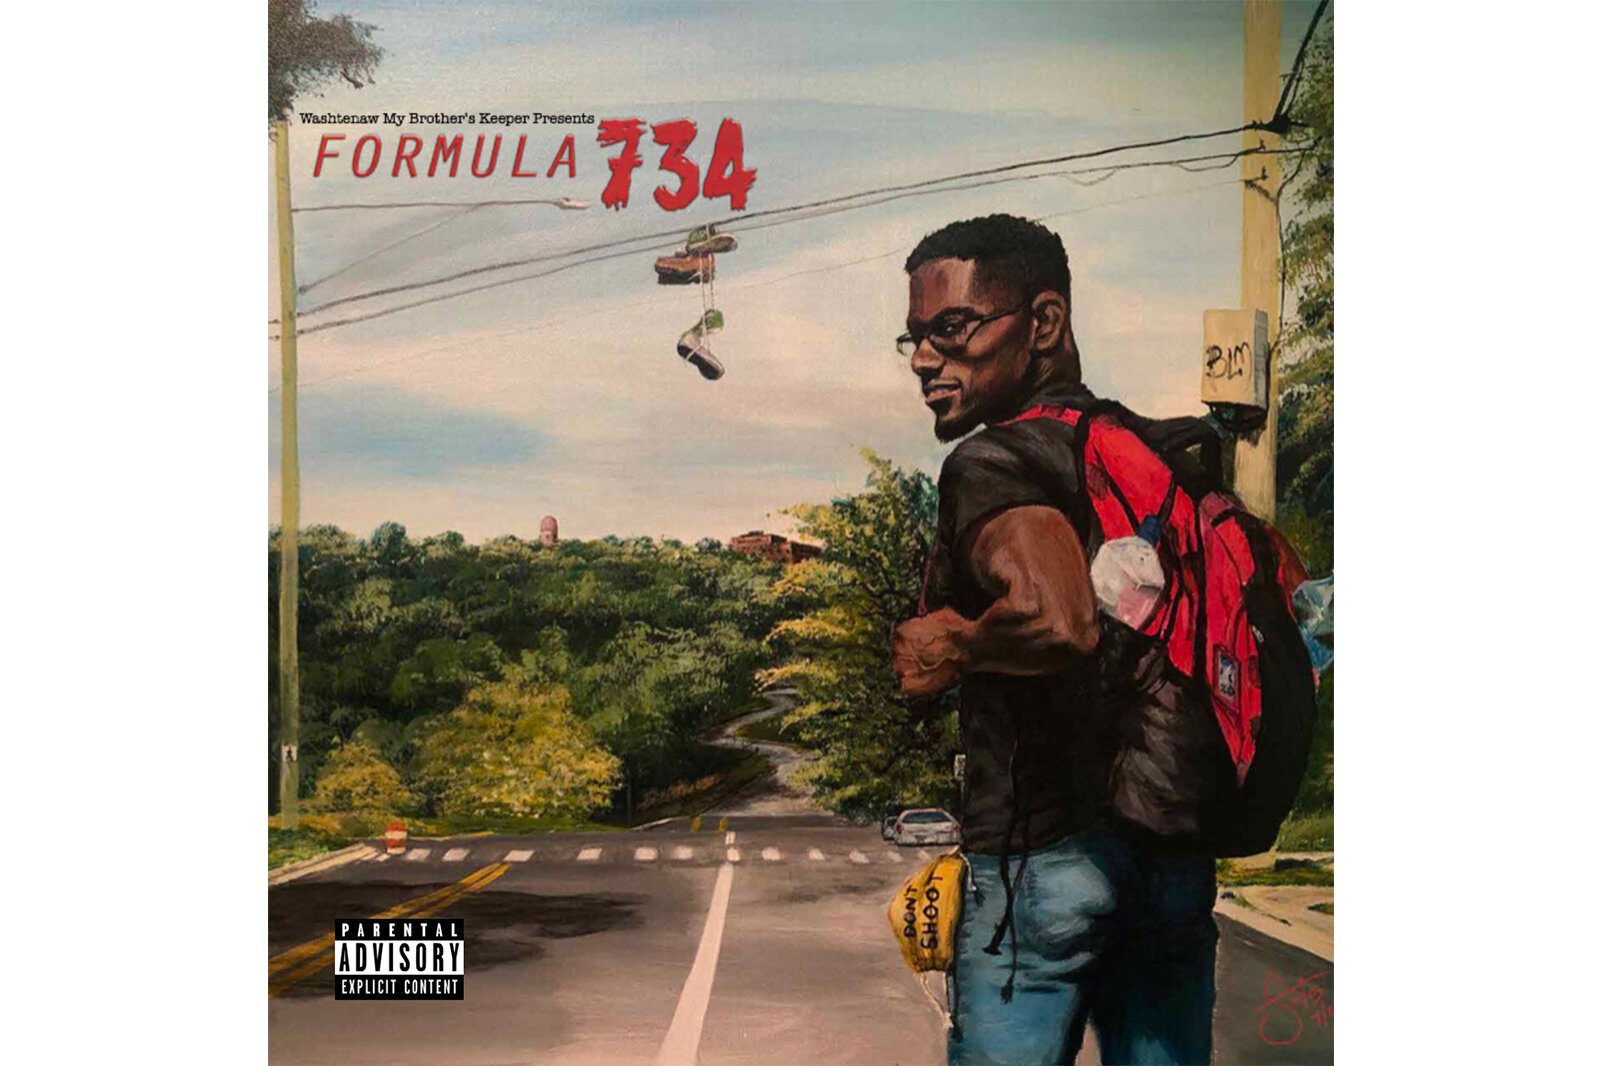 "Formula 734" album art.